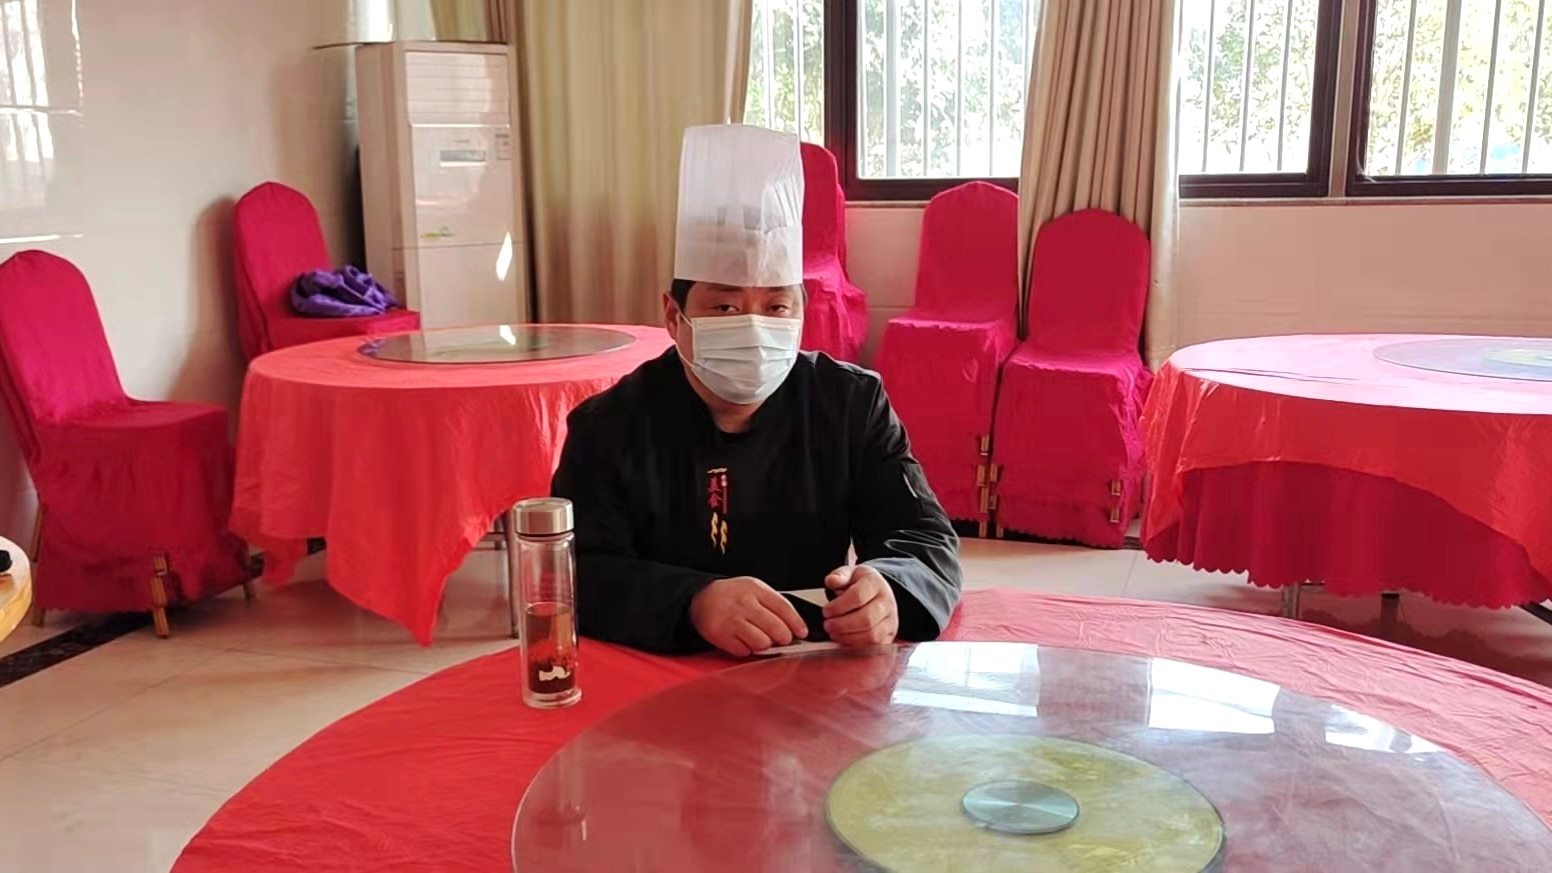 Wanru Zhang, đầu bếp tại thành phố Hợp Phì thuộc tỉnh An Huy, cho biết anh không về quê trong Tết. Ảnh: ABC.